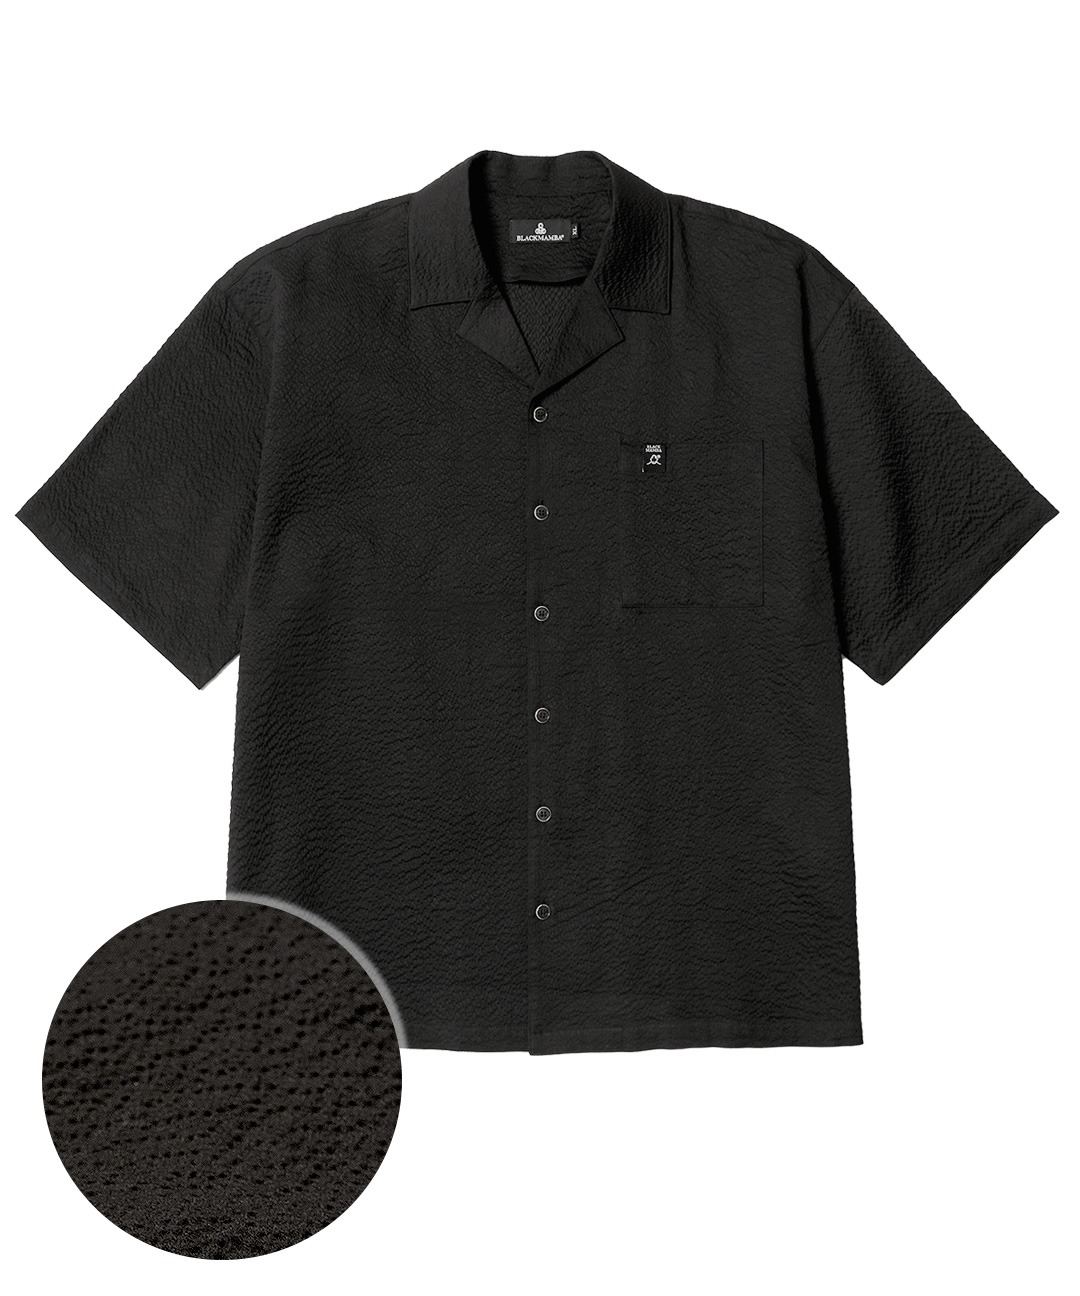 시어서커 오픈 카라 반팔 셔츠 (블랙)